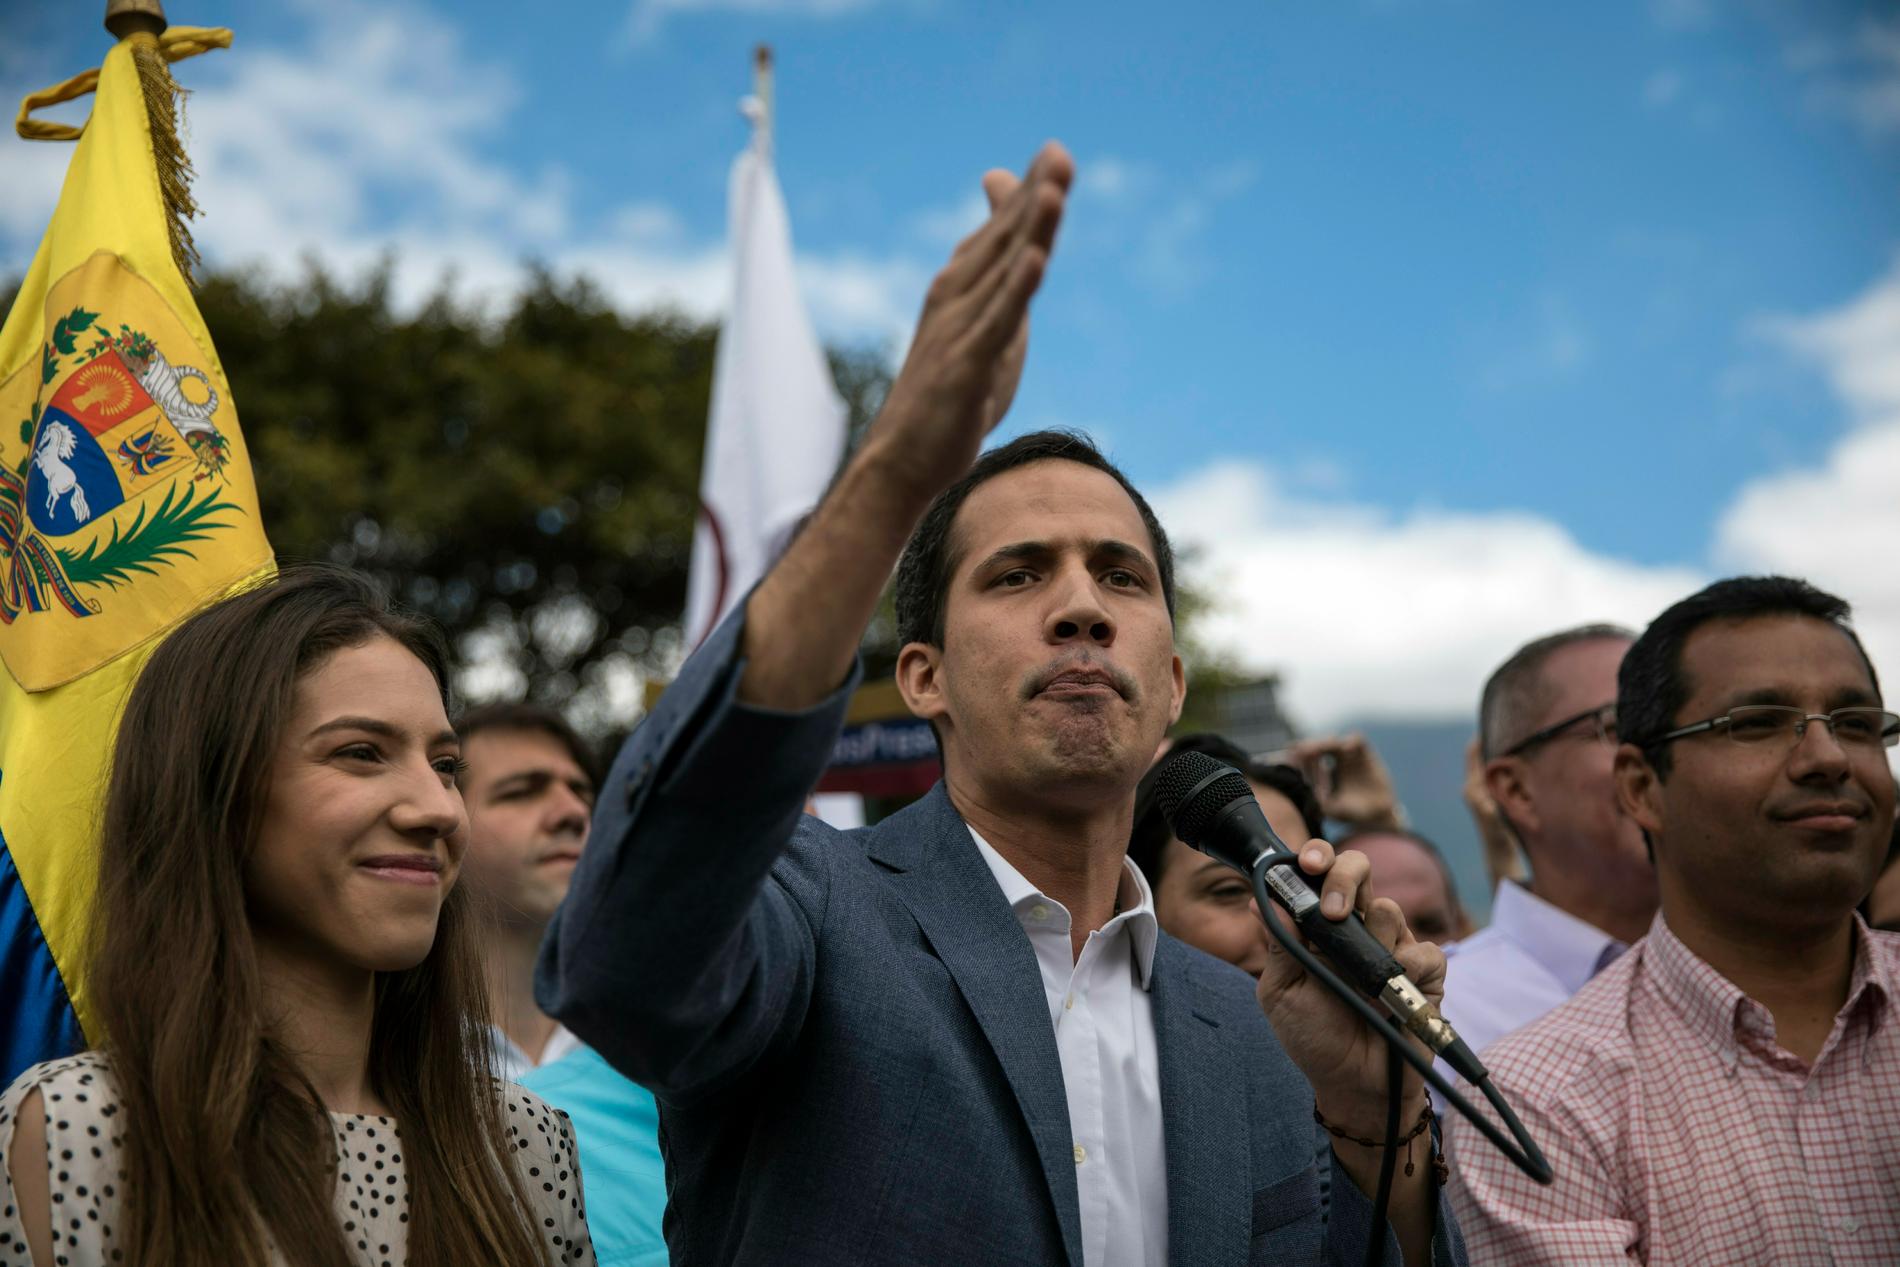 Juan Guaidó talar inför sina anhängare på lördagen. Till vänster syns hans fru Fabiana Rosales, som också är politiskt engagerad.